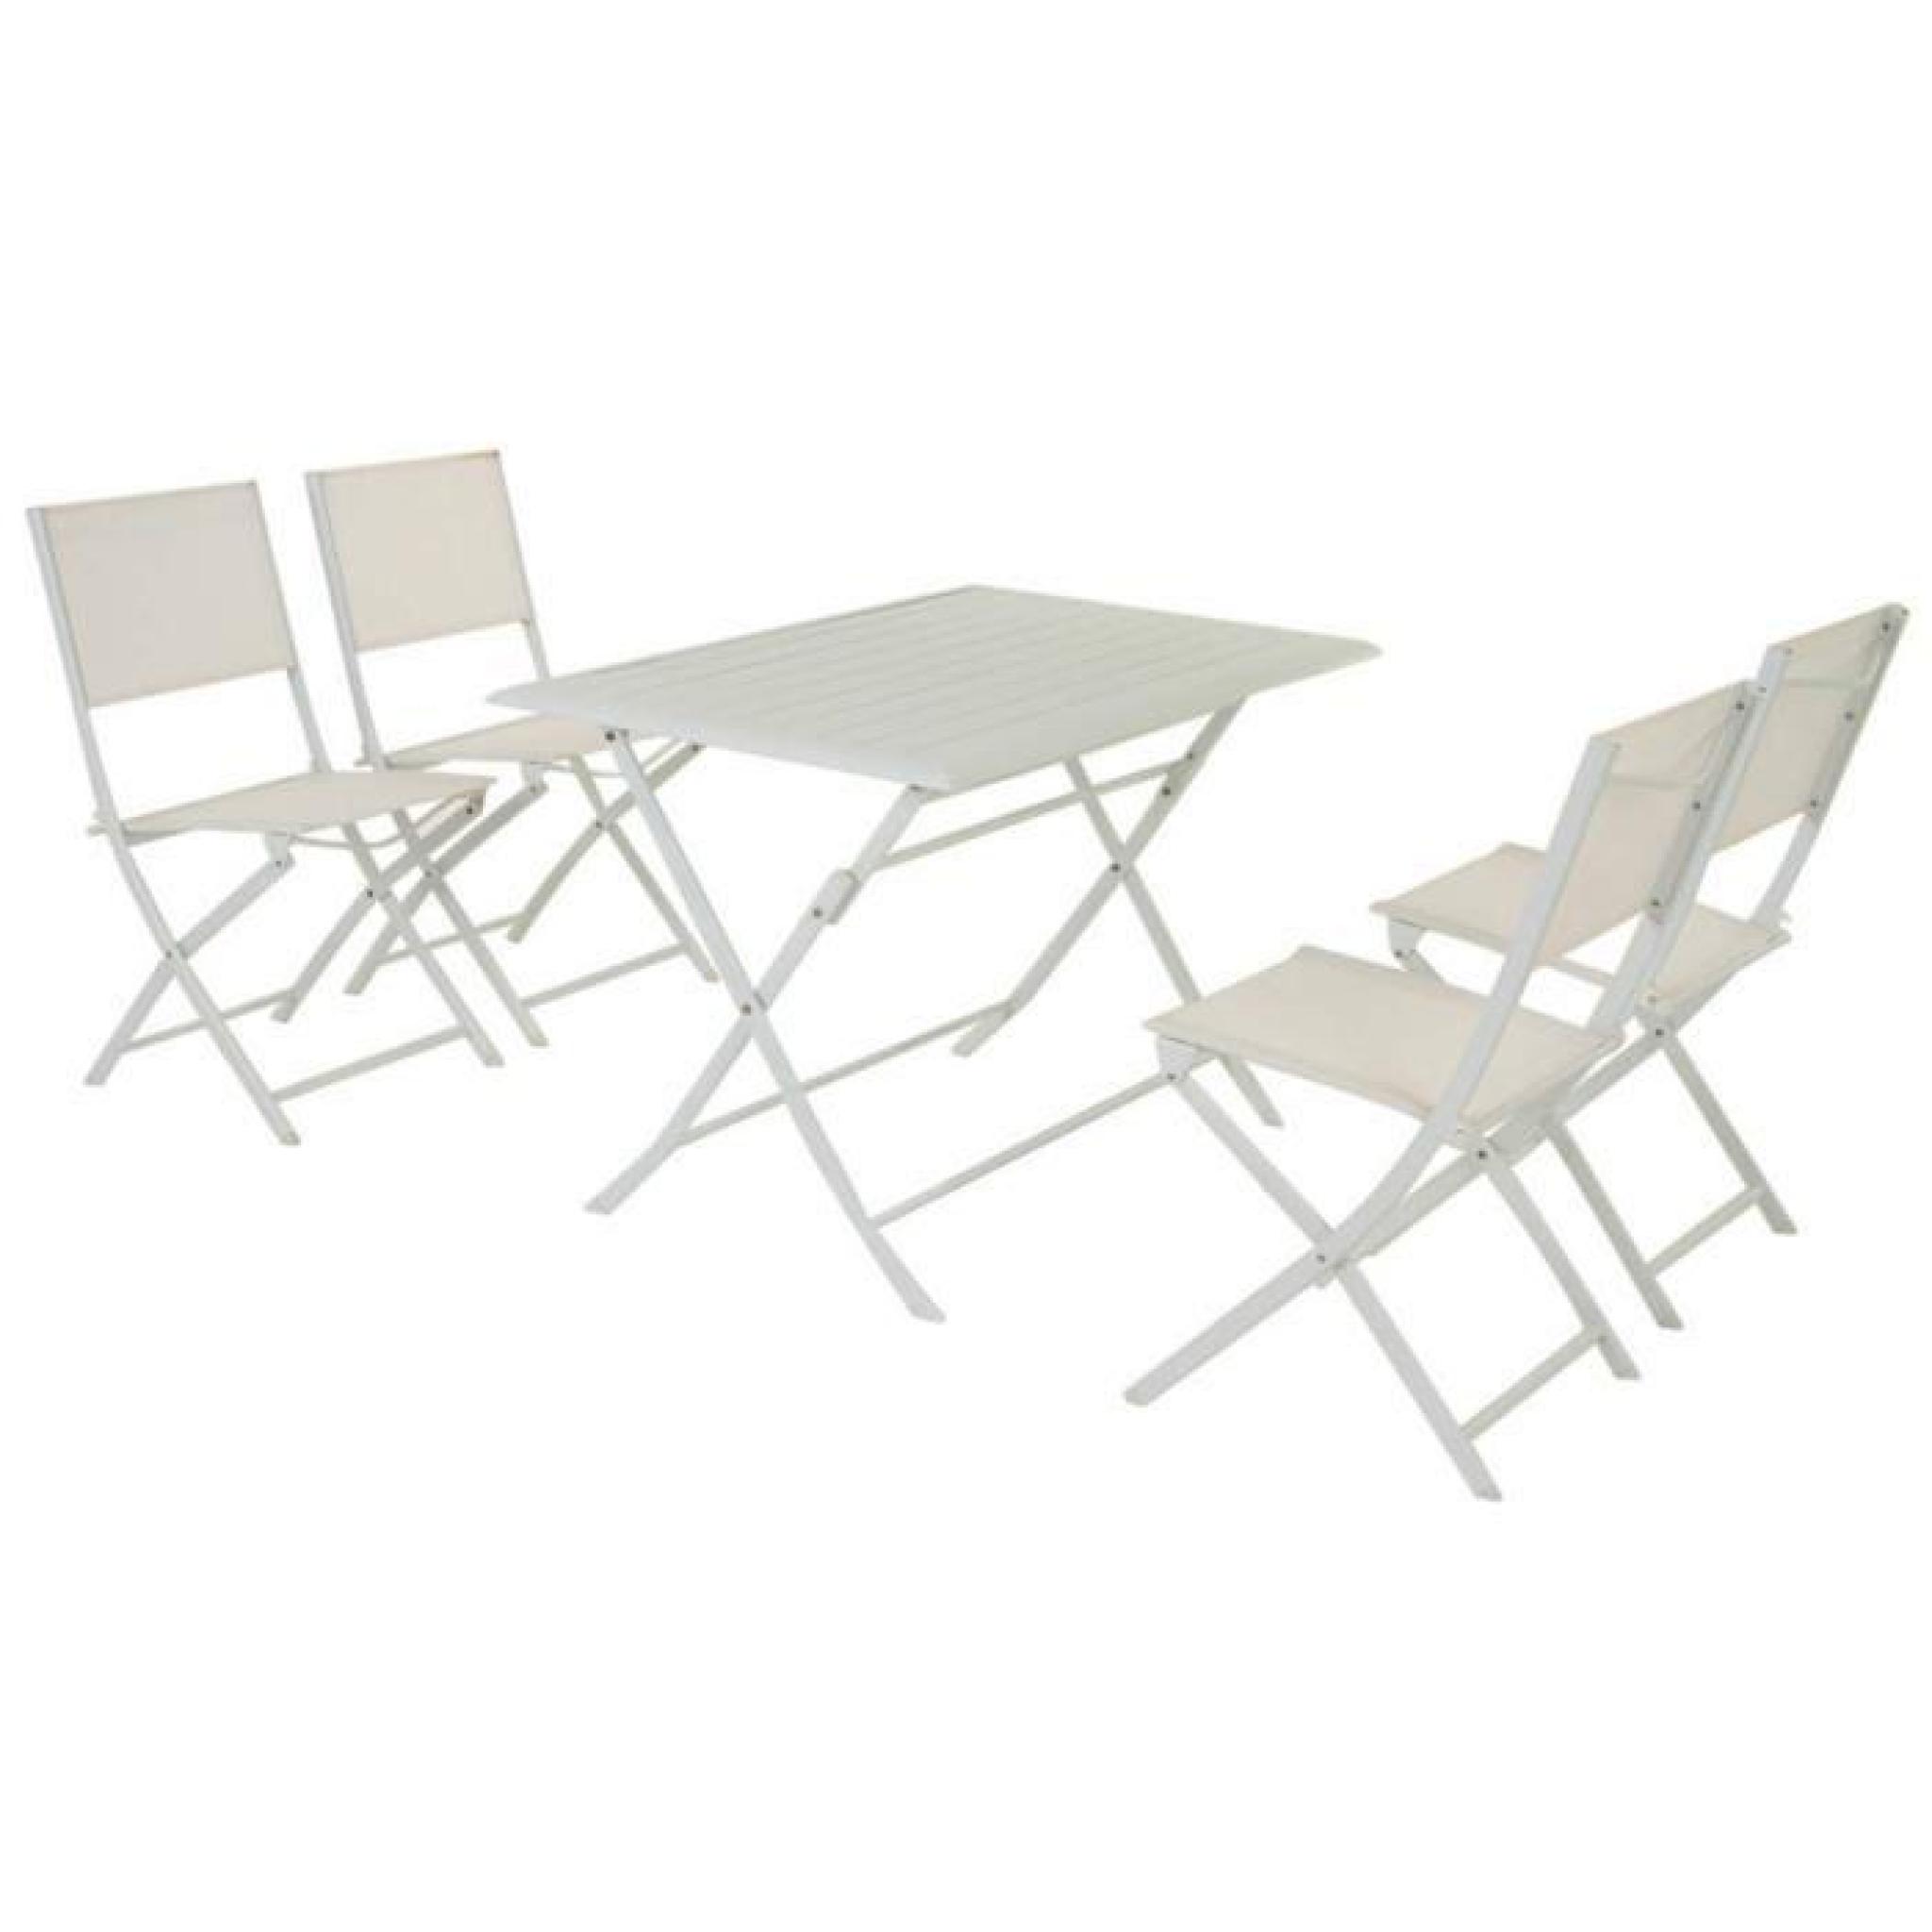 Table pliante rectangulaire en aluminium coloris blanc - Dim : L 110 x P 71 x H 71 cm  pas cher